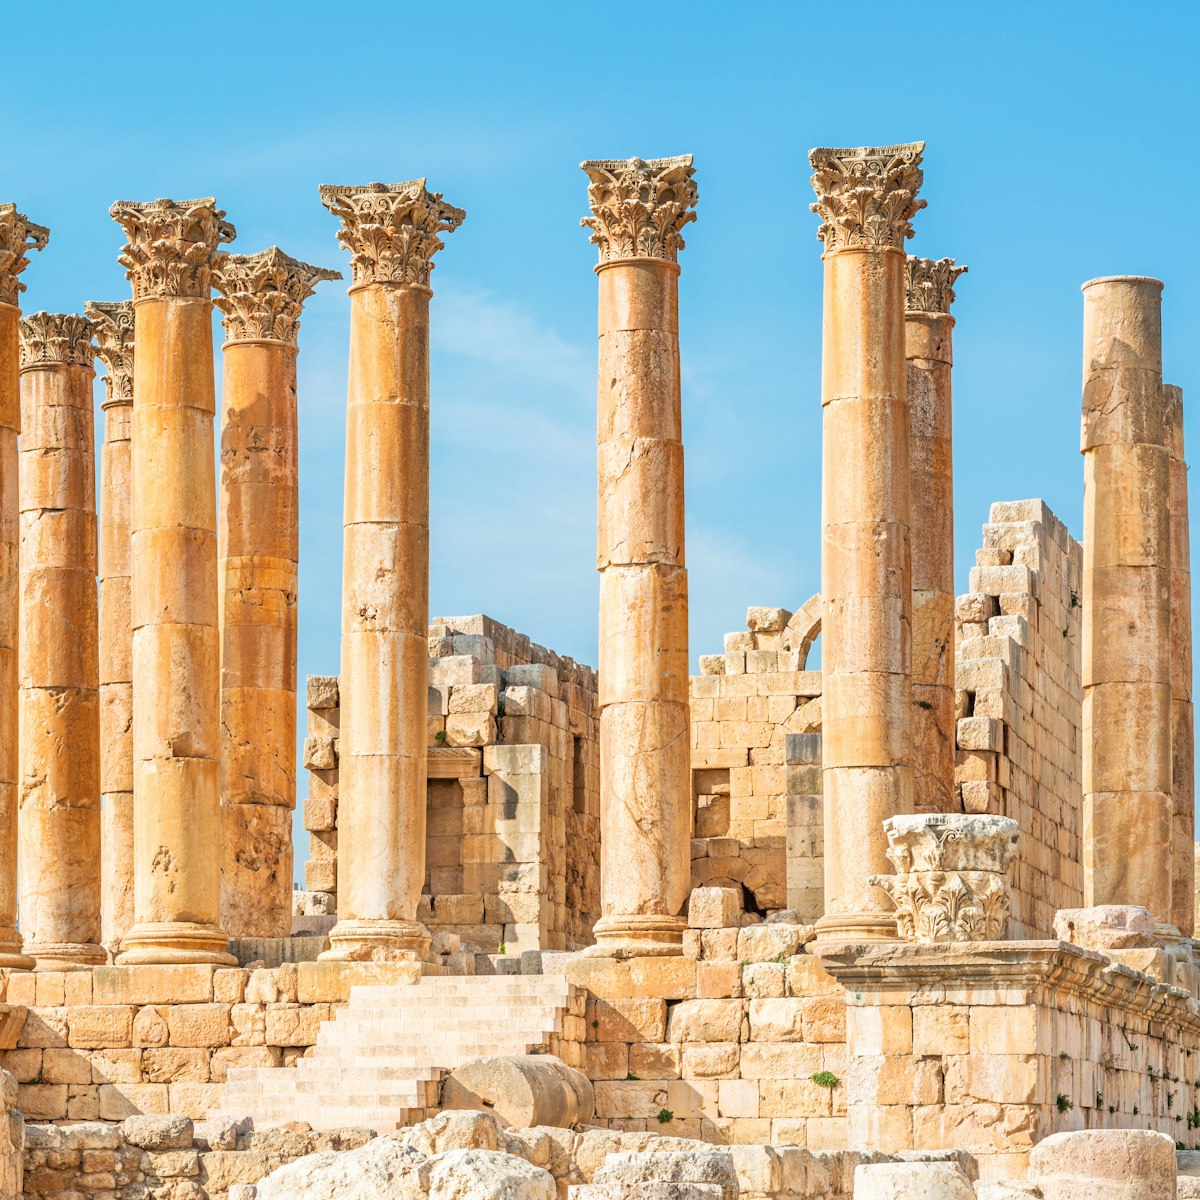 Temple of Artemis in the ancient Roman city of Gerasa, preset-day Jerash, Jordan. 